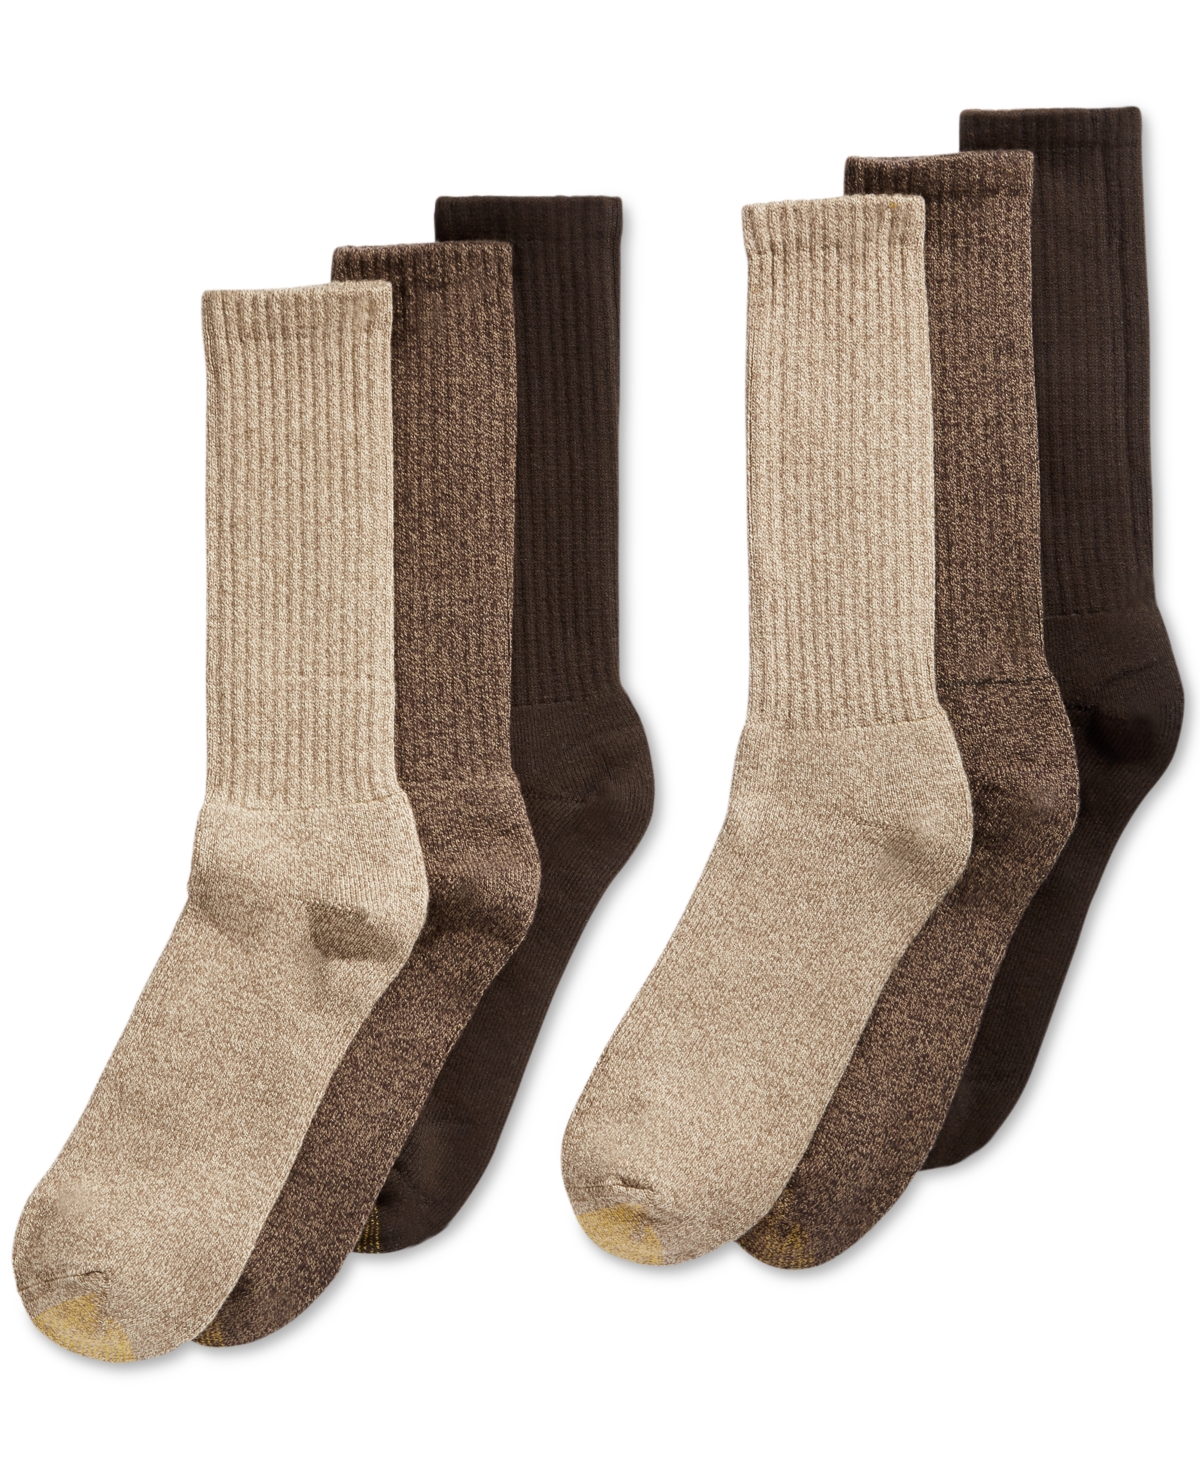 Men's 6-Pack Casual Harrington Socks - White